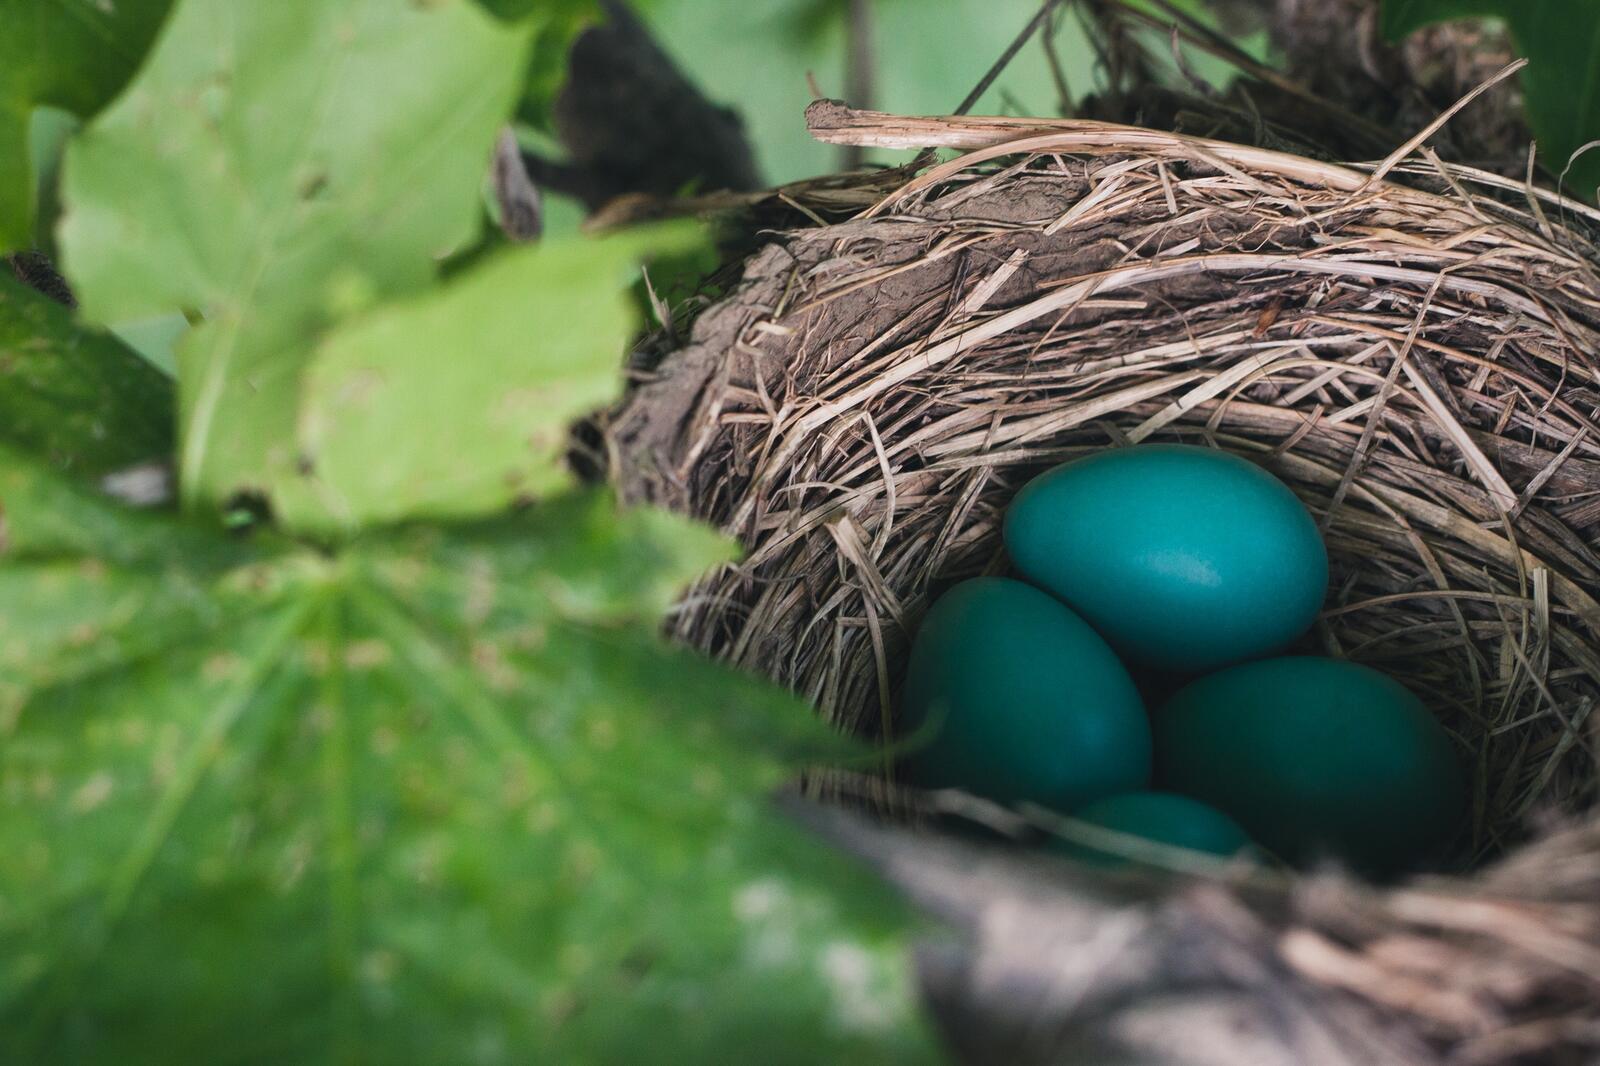 Бесплатное фото Яйца темно-зеленого цвета в птичьем гнезде